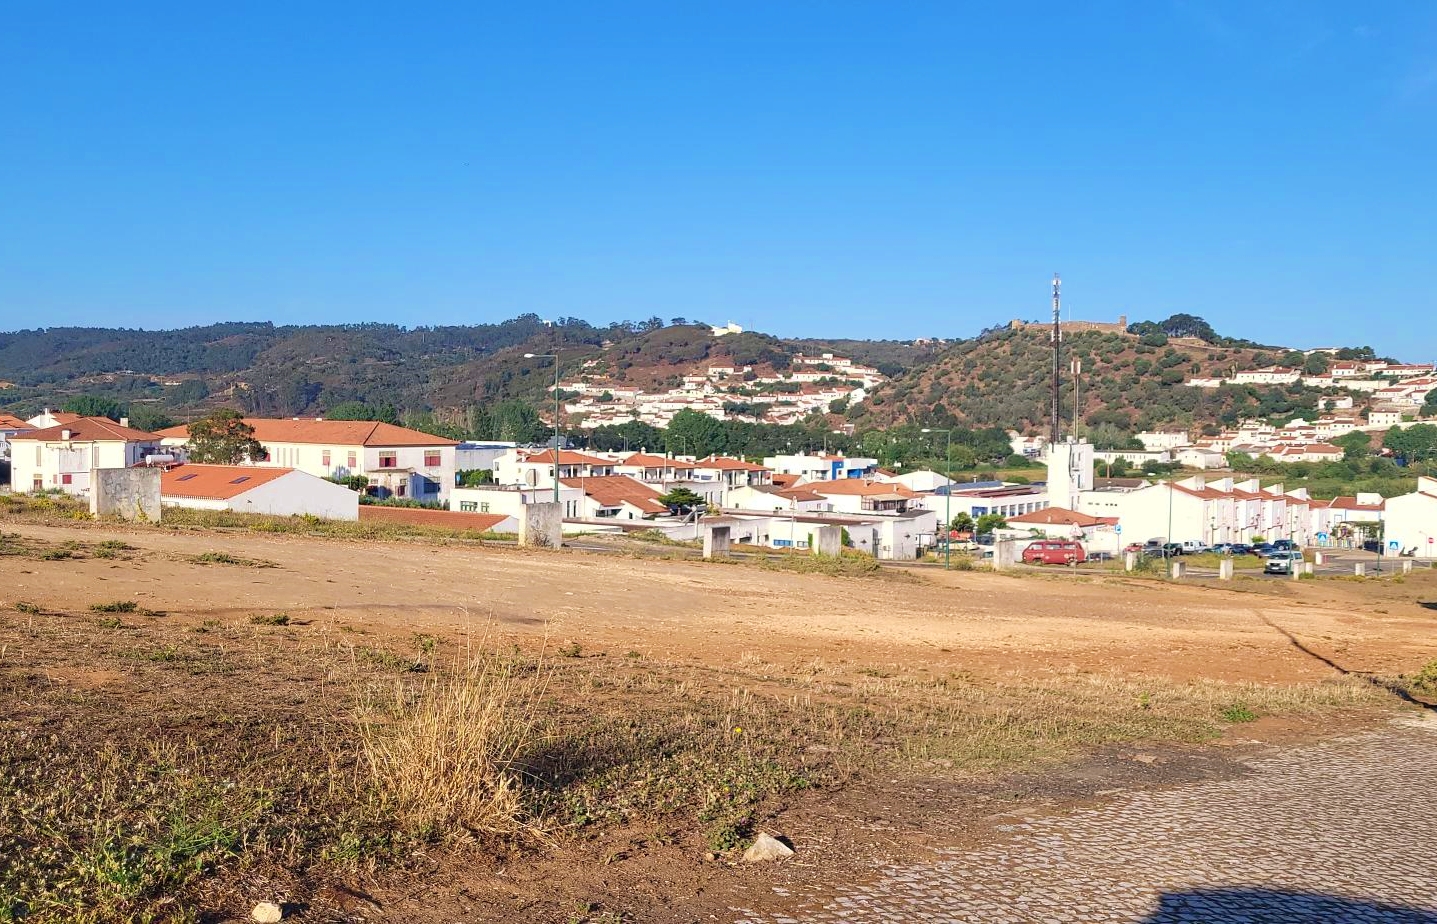 Câmara Municipal lança empreitada das infraestruturas do Loteamento da Barrada em Aljezur